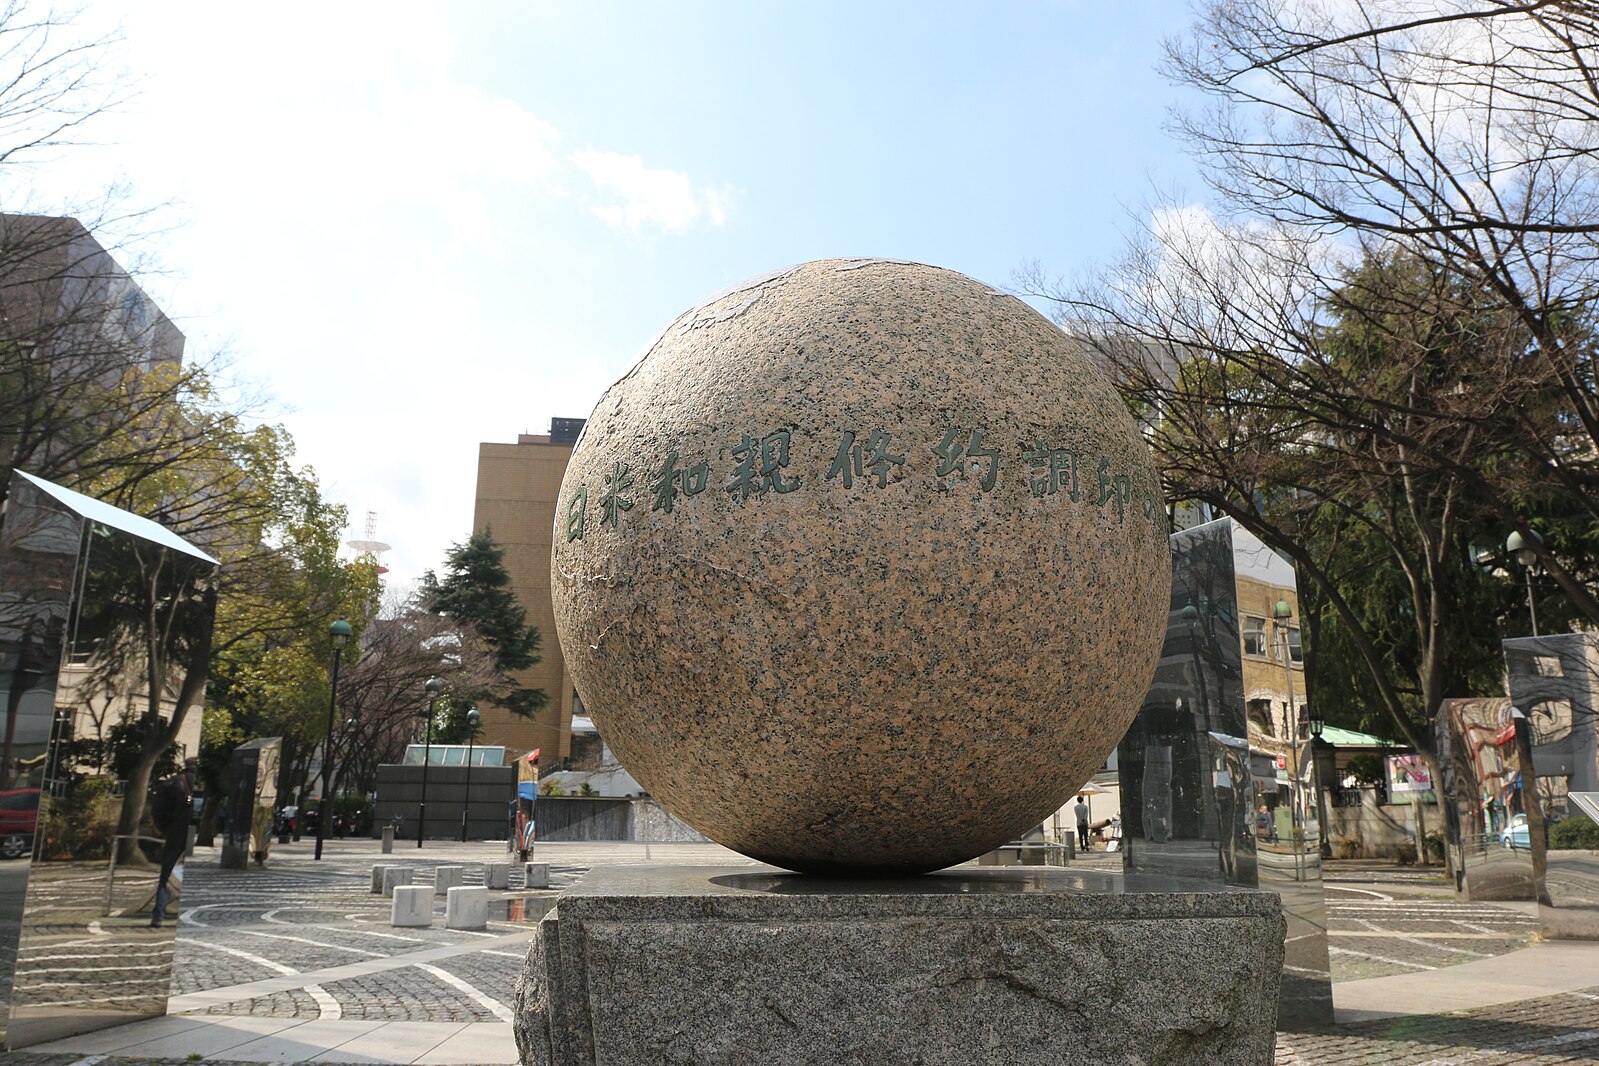 Hiệp ước Kanagawa là một sự kiện mang tính bước ngoặc trong lịch sử Nhật Bản đến mức người ta xây dựng một tượng đài để đánh dấu địa điểm này. (Ảnh: Fumihiro Kato/CC BY-SA 4.0)